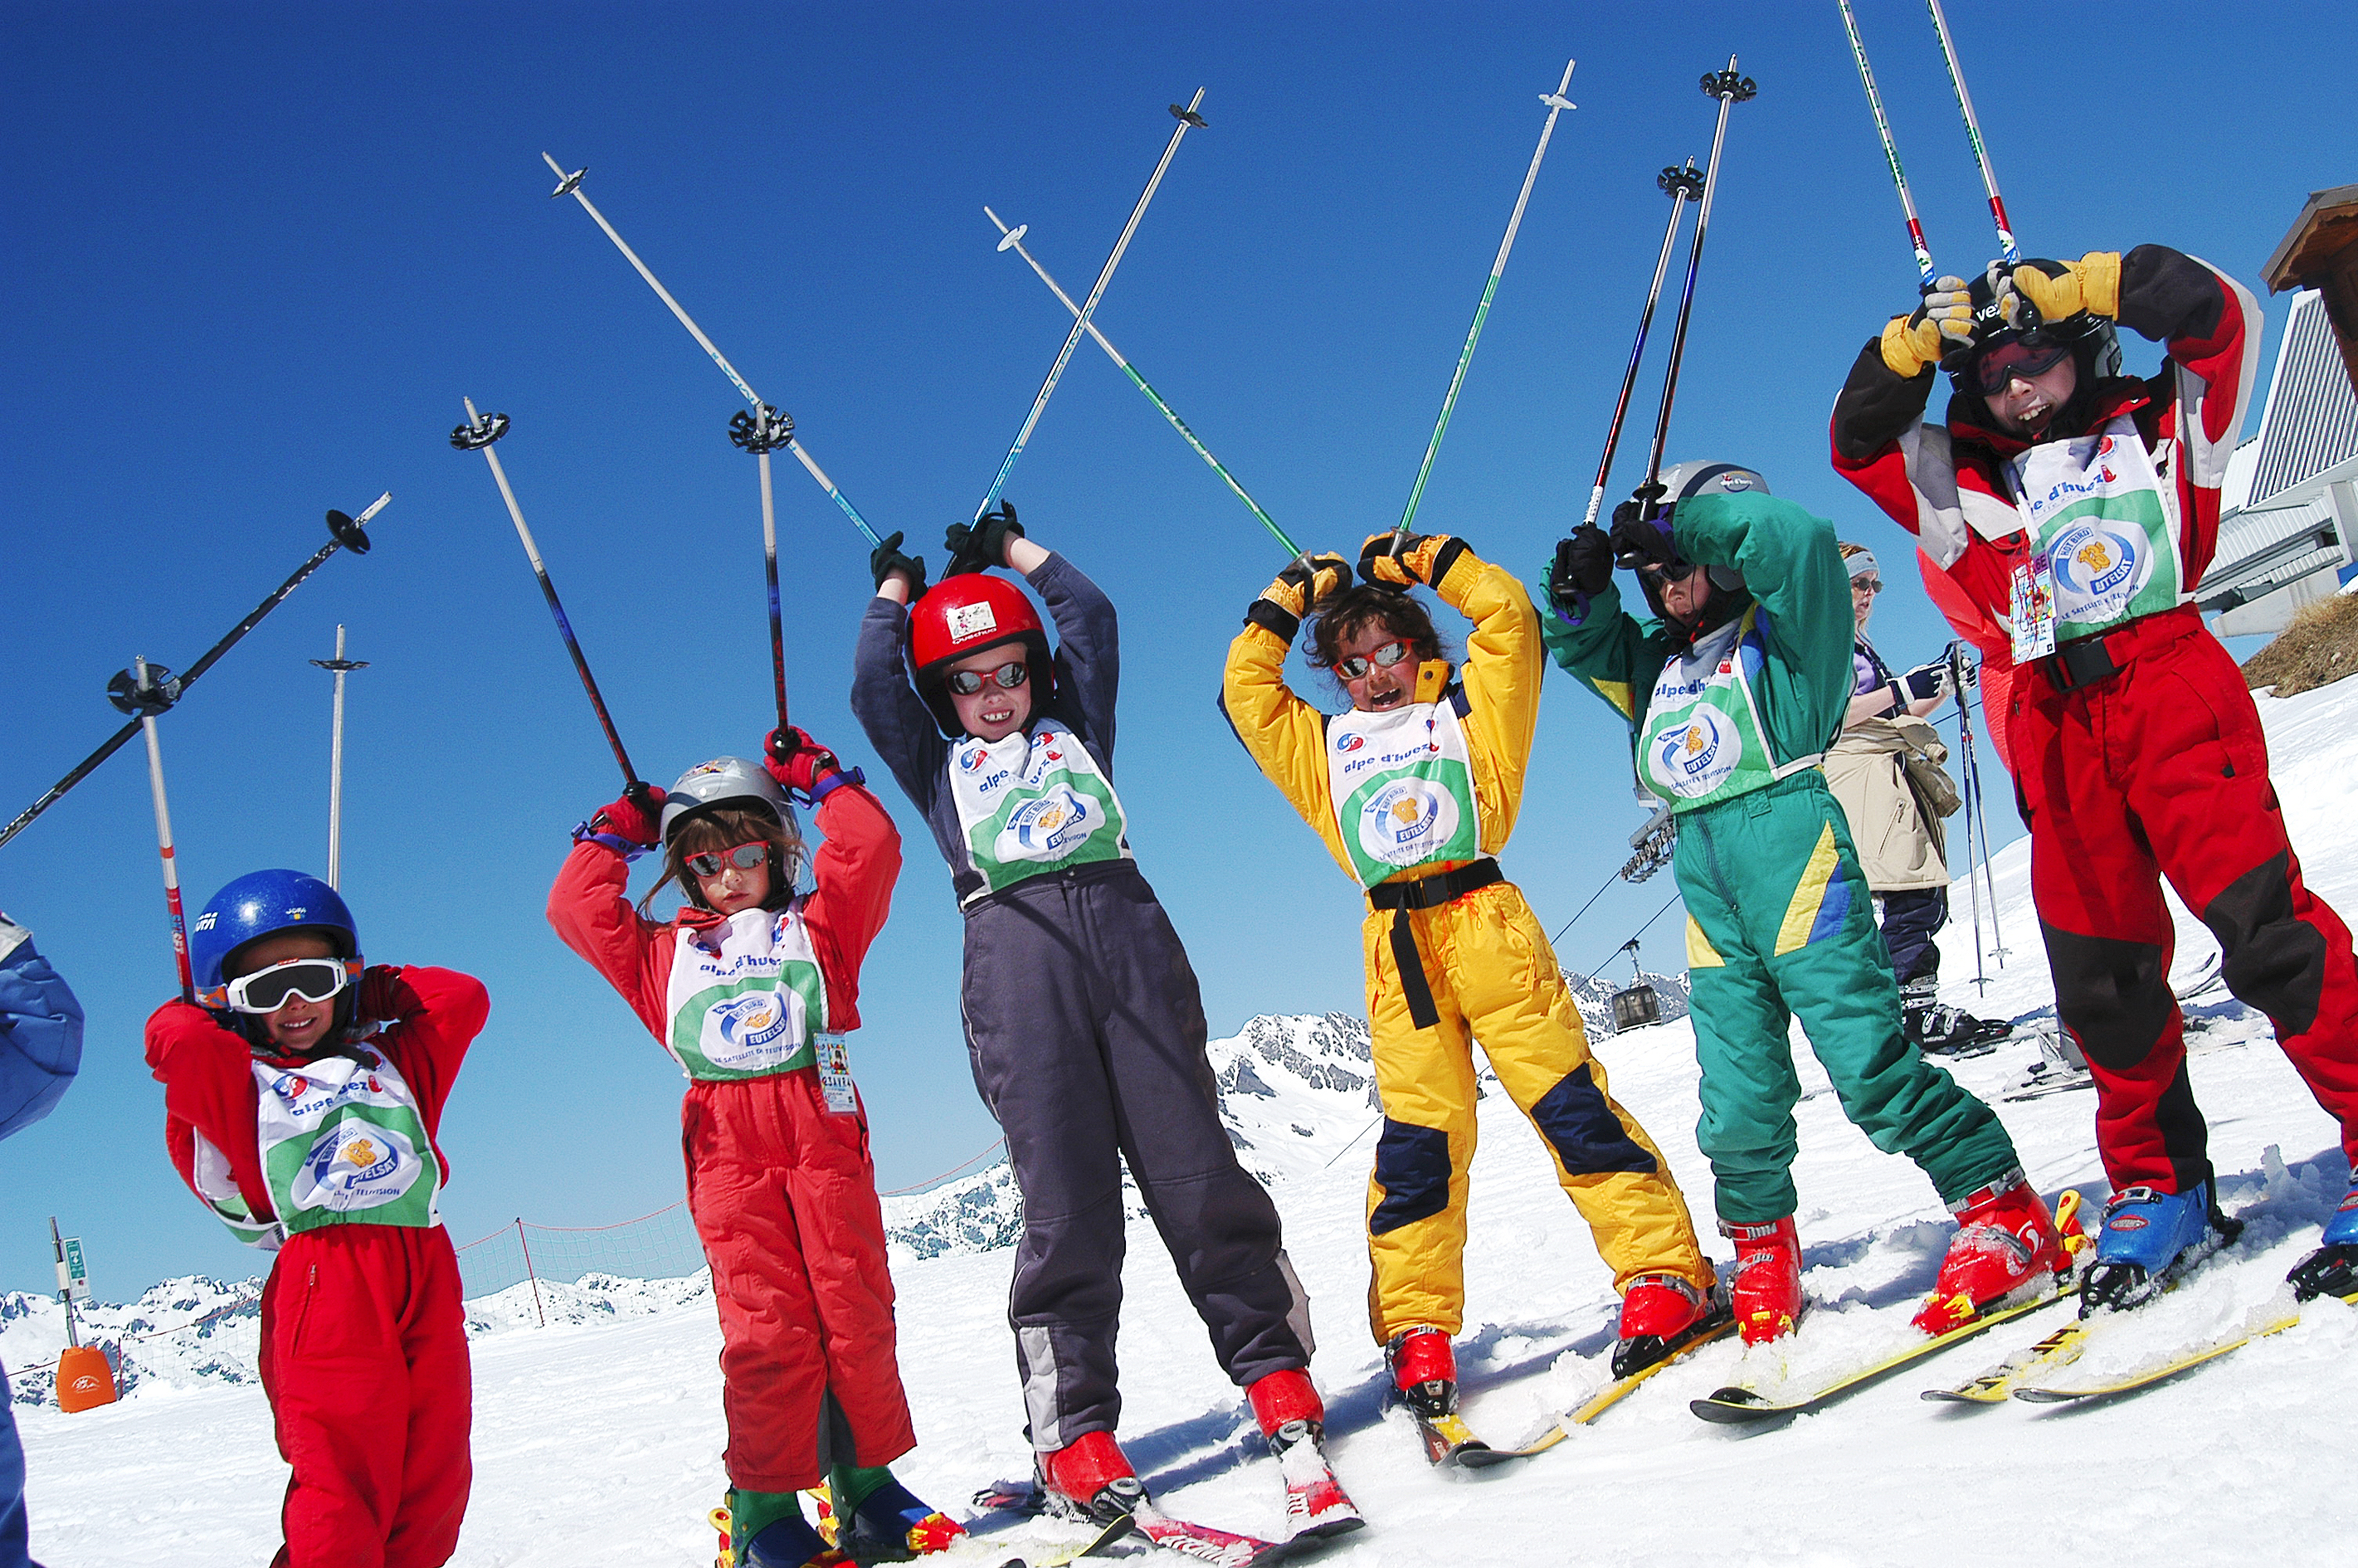 Visit Alpe d'Huez for excellent beginner skiing holidays